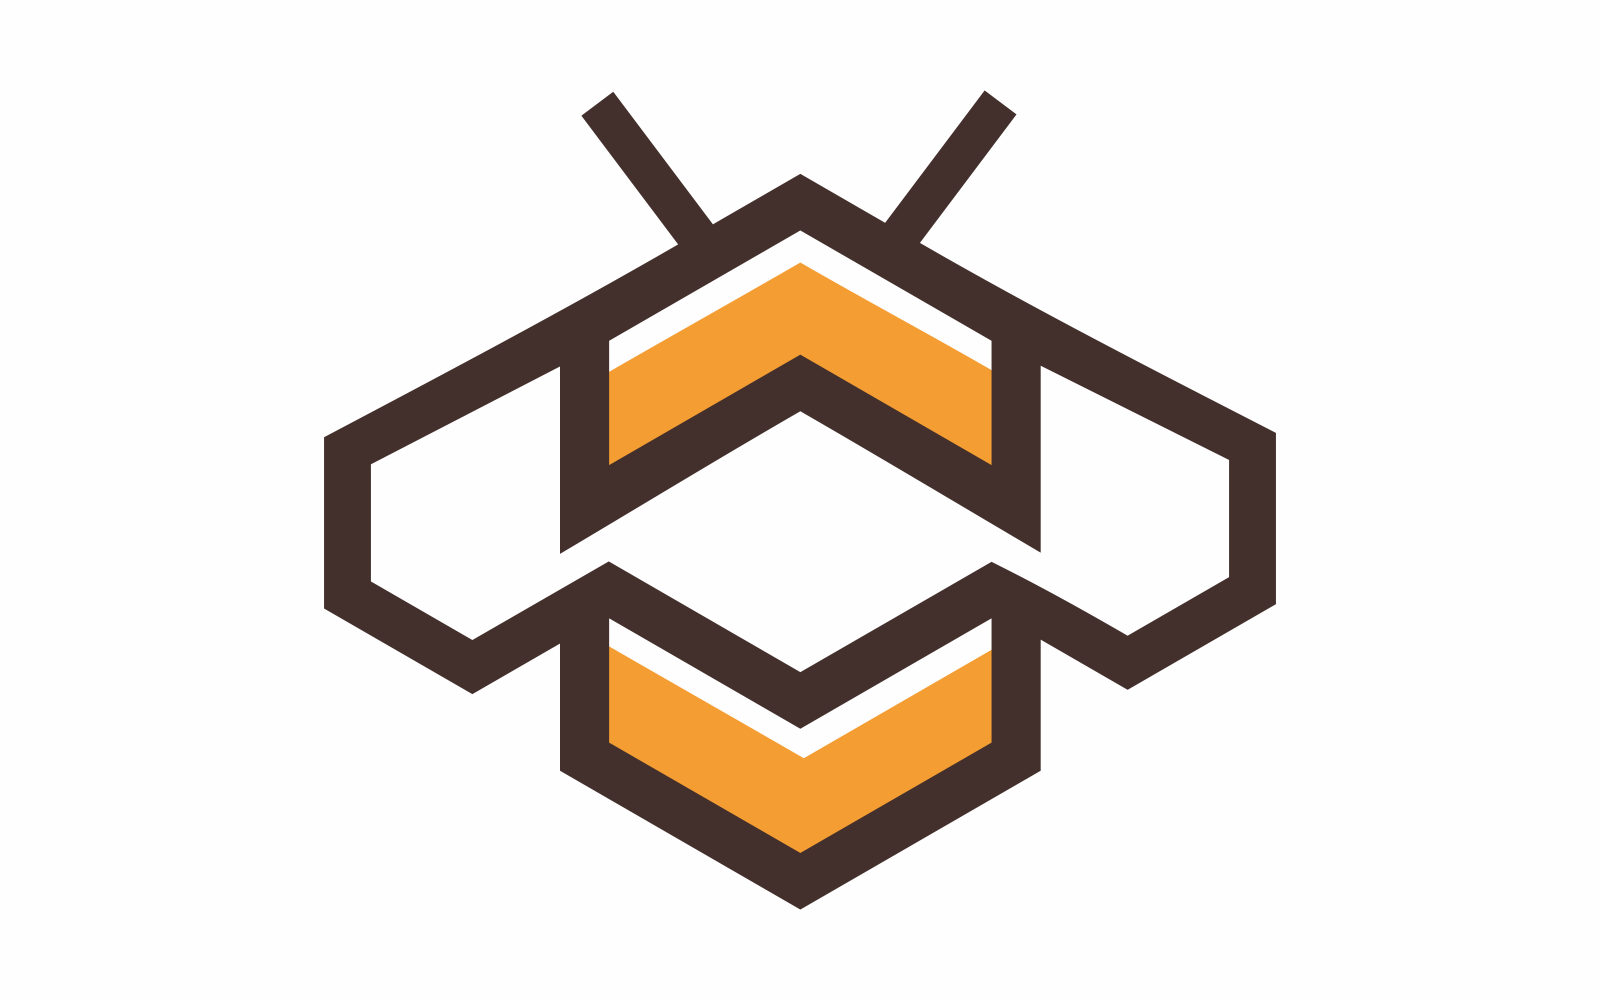 Hexagon Abstract Bee Logo Template